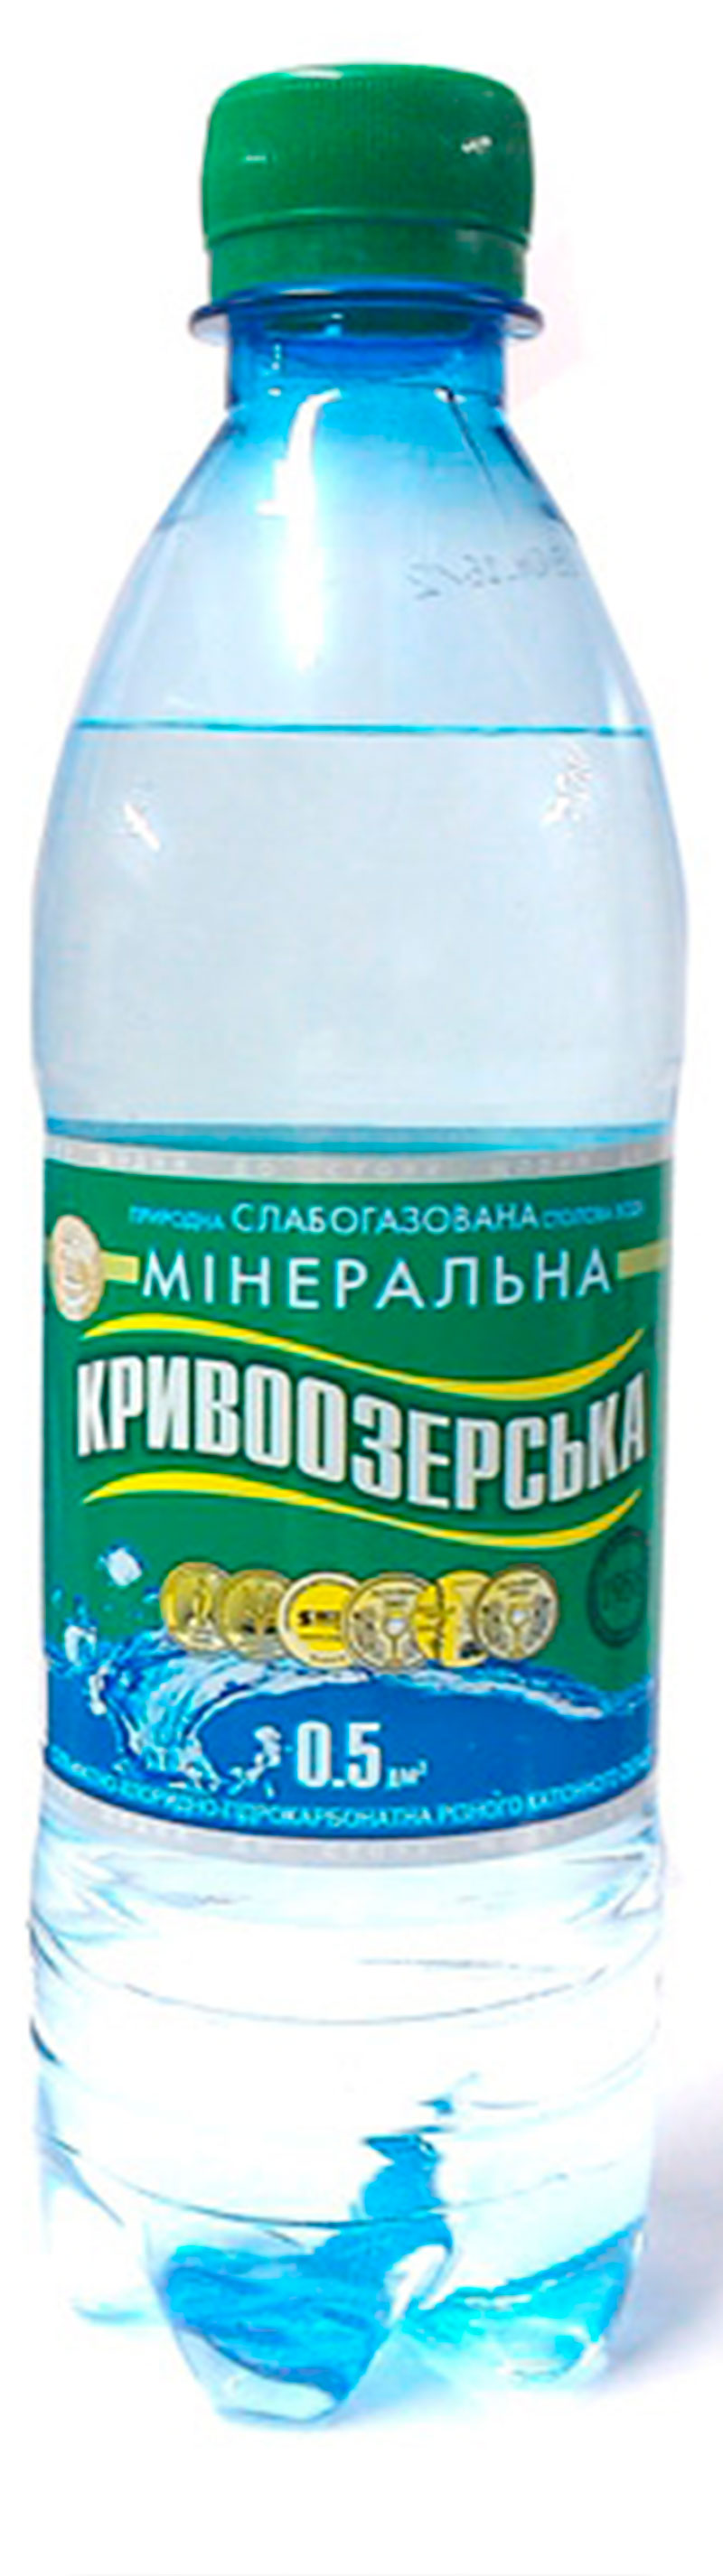 Вода газированная Кривоозерская, 0.5 л